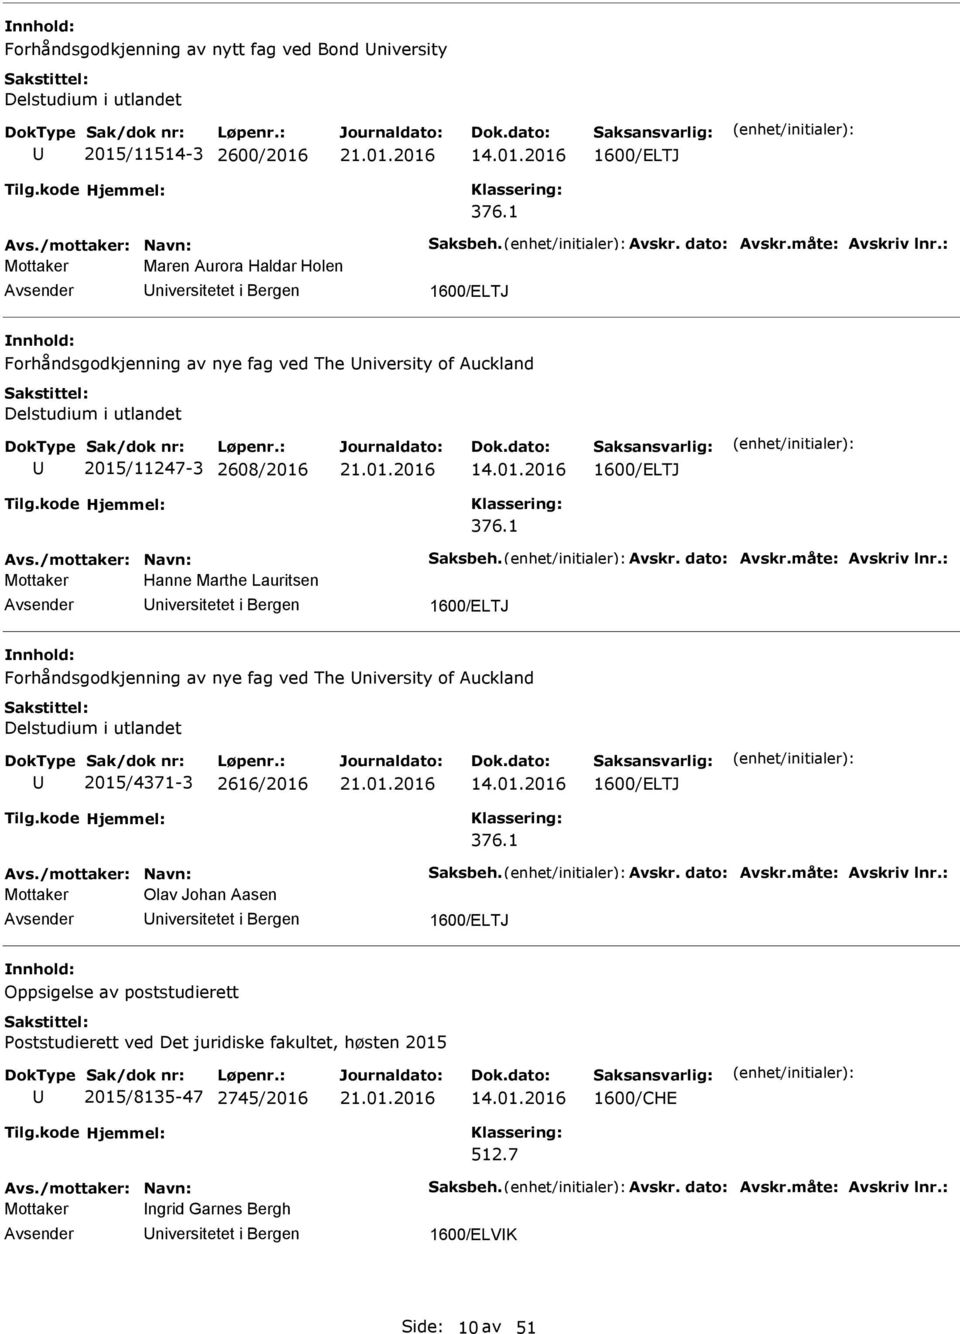 1 Mottaker Hanne Marthe Lauritsen 1600/ELTJ Forhåndsgodkjenning av nye fag ved The niversity of Auckland Delstudium i utlandet 2015/4371-3 2616/2016 14.01.2016 1600/ELTJ 376.